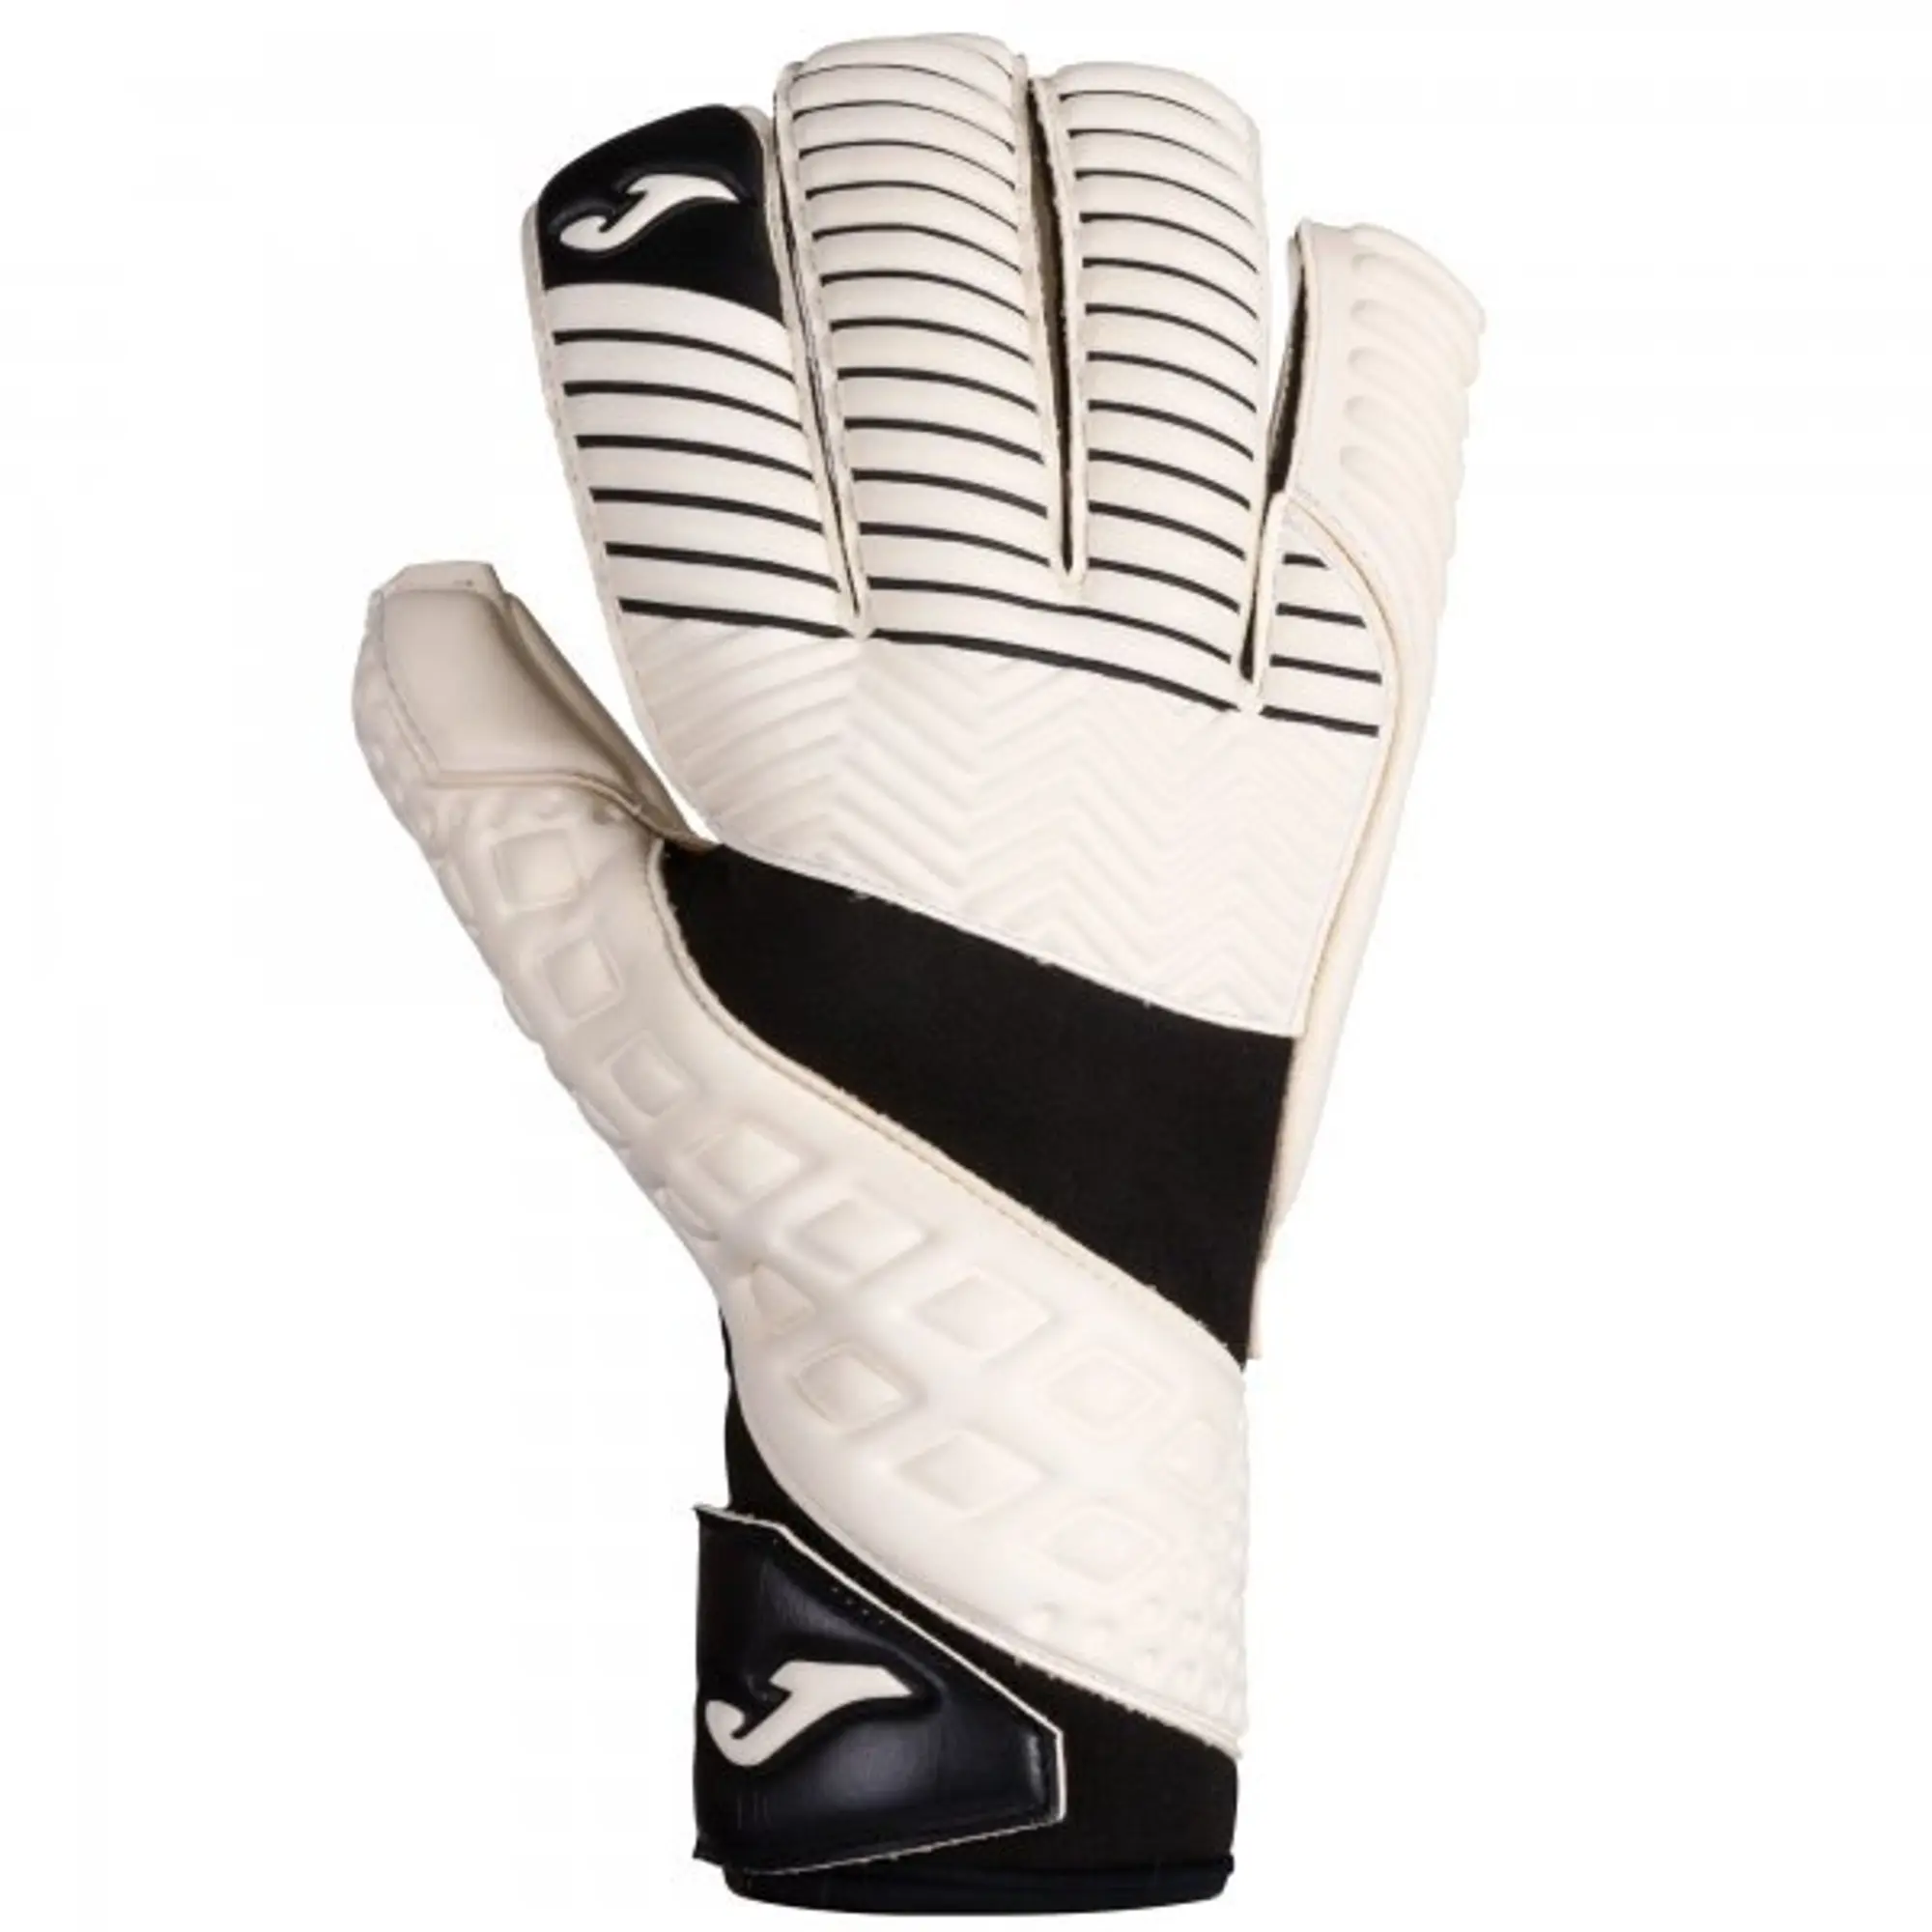 Joma Area Goalkeeper Gloves  - White,Black